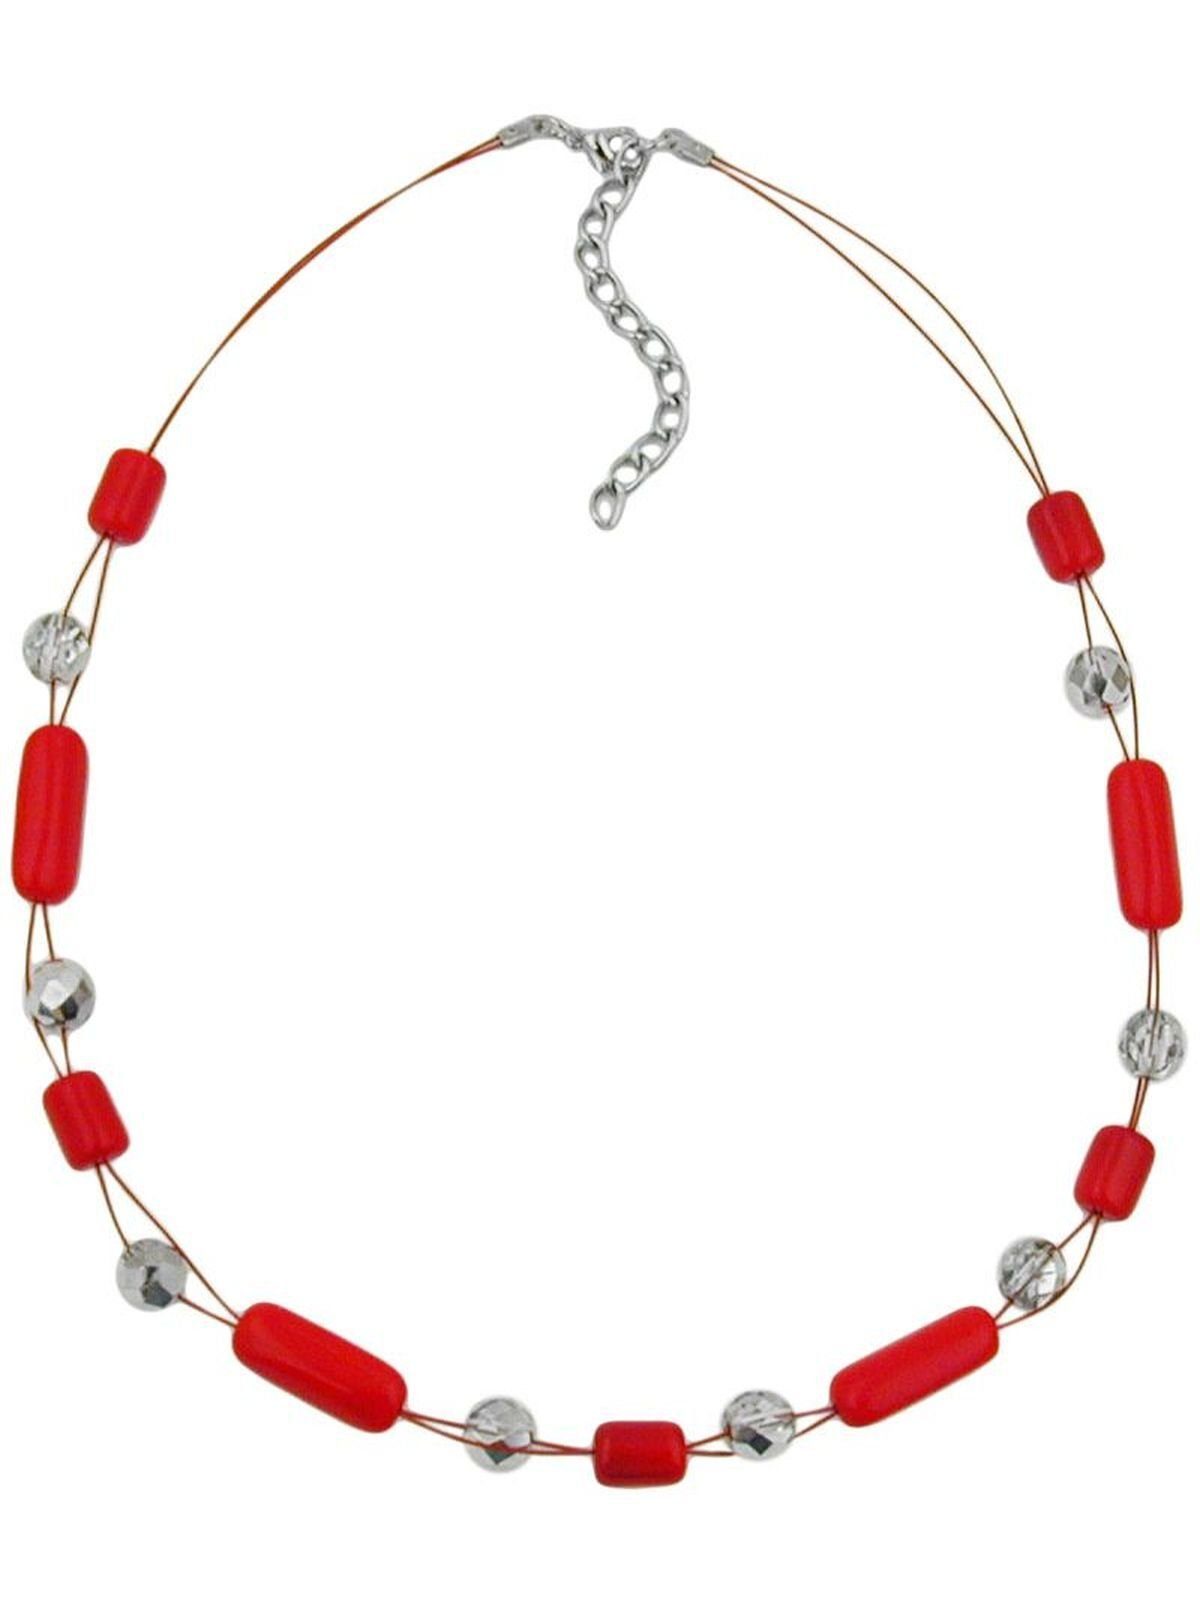 Gallay Perlenkette Drahtkette mit Glasperlen Walze rot und kristall silber-verspiegelt 45cm